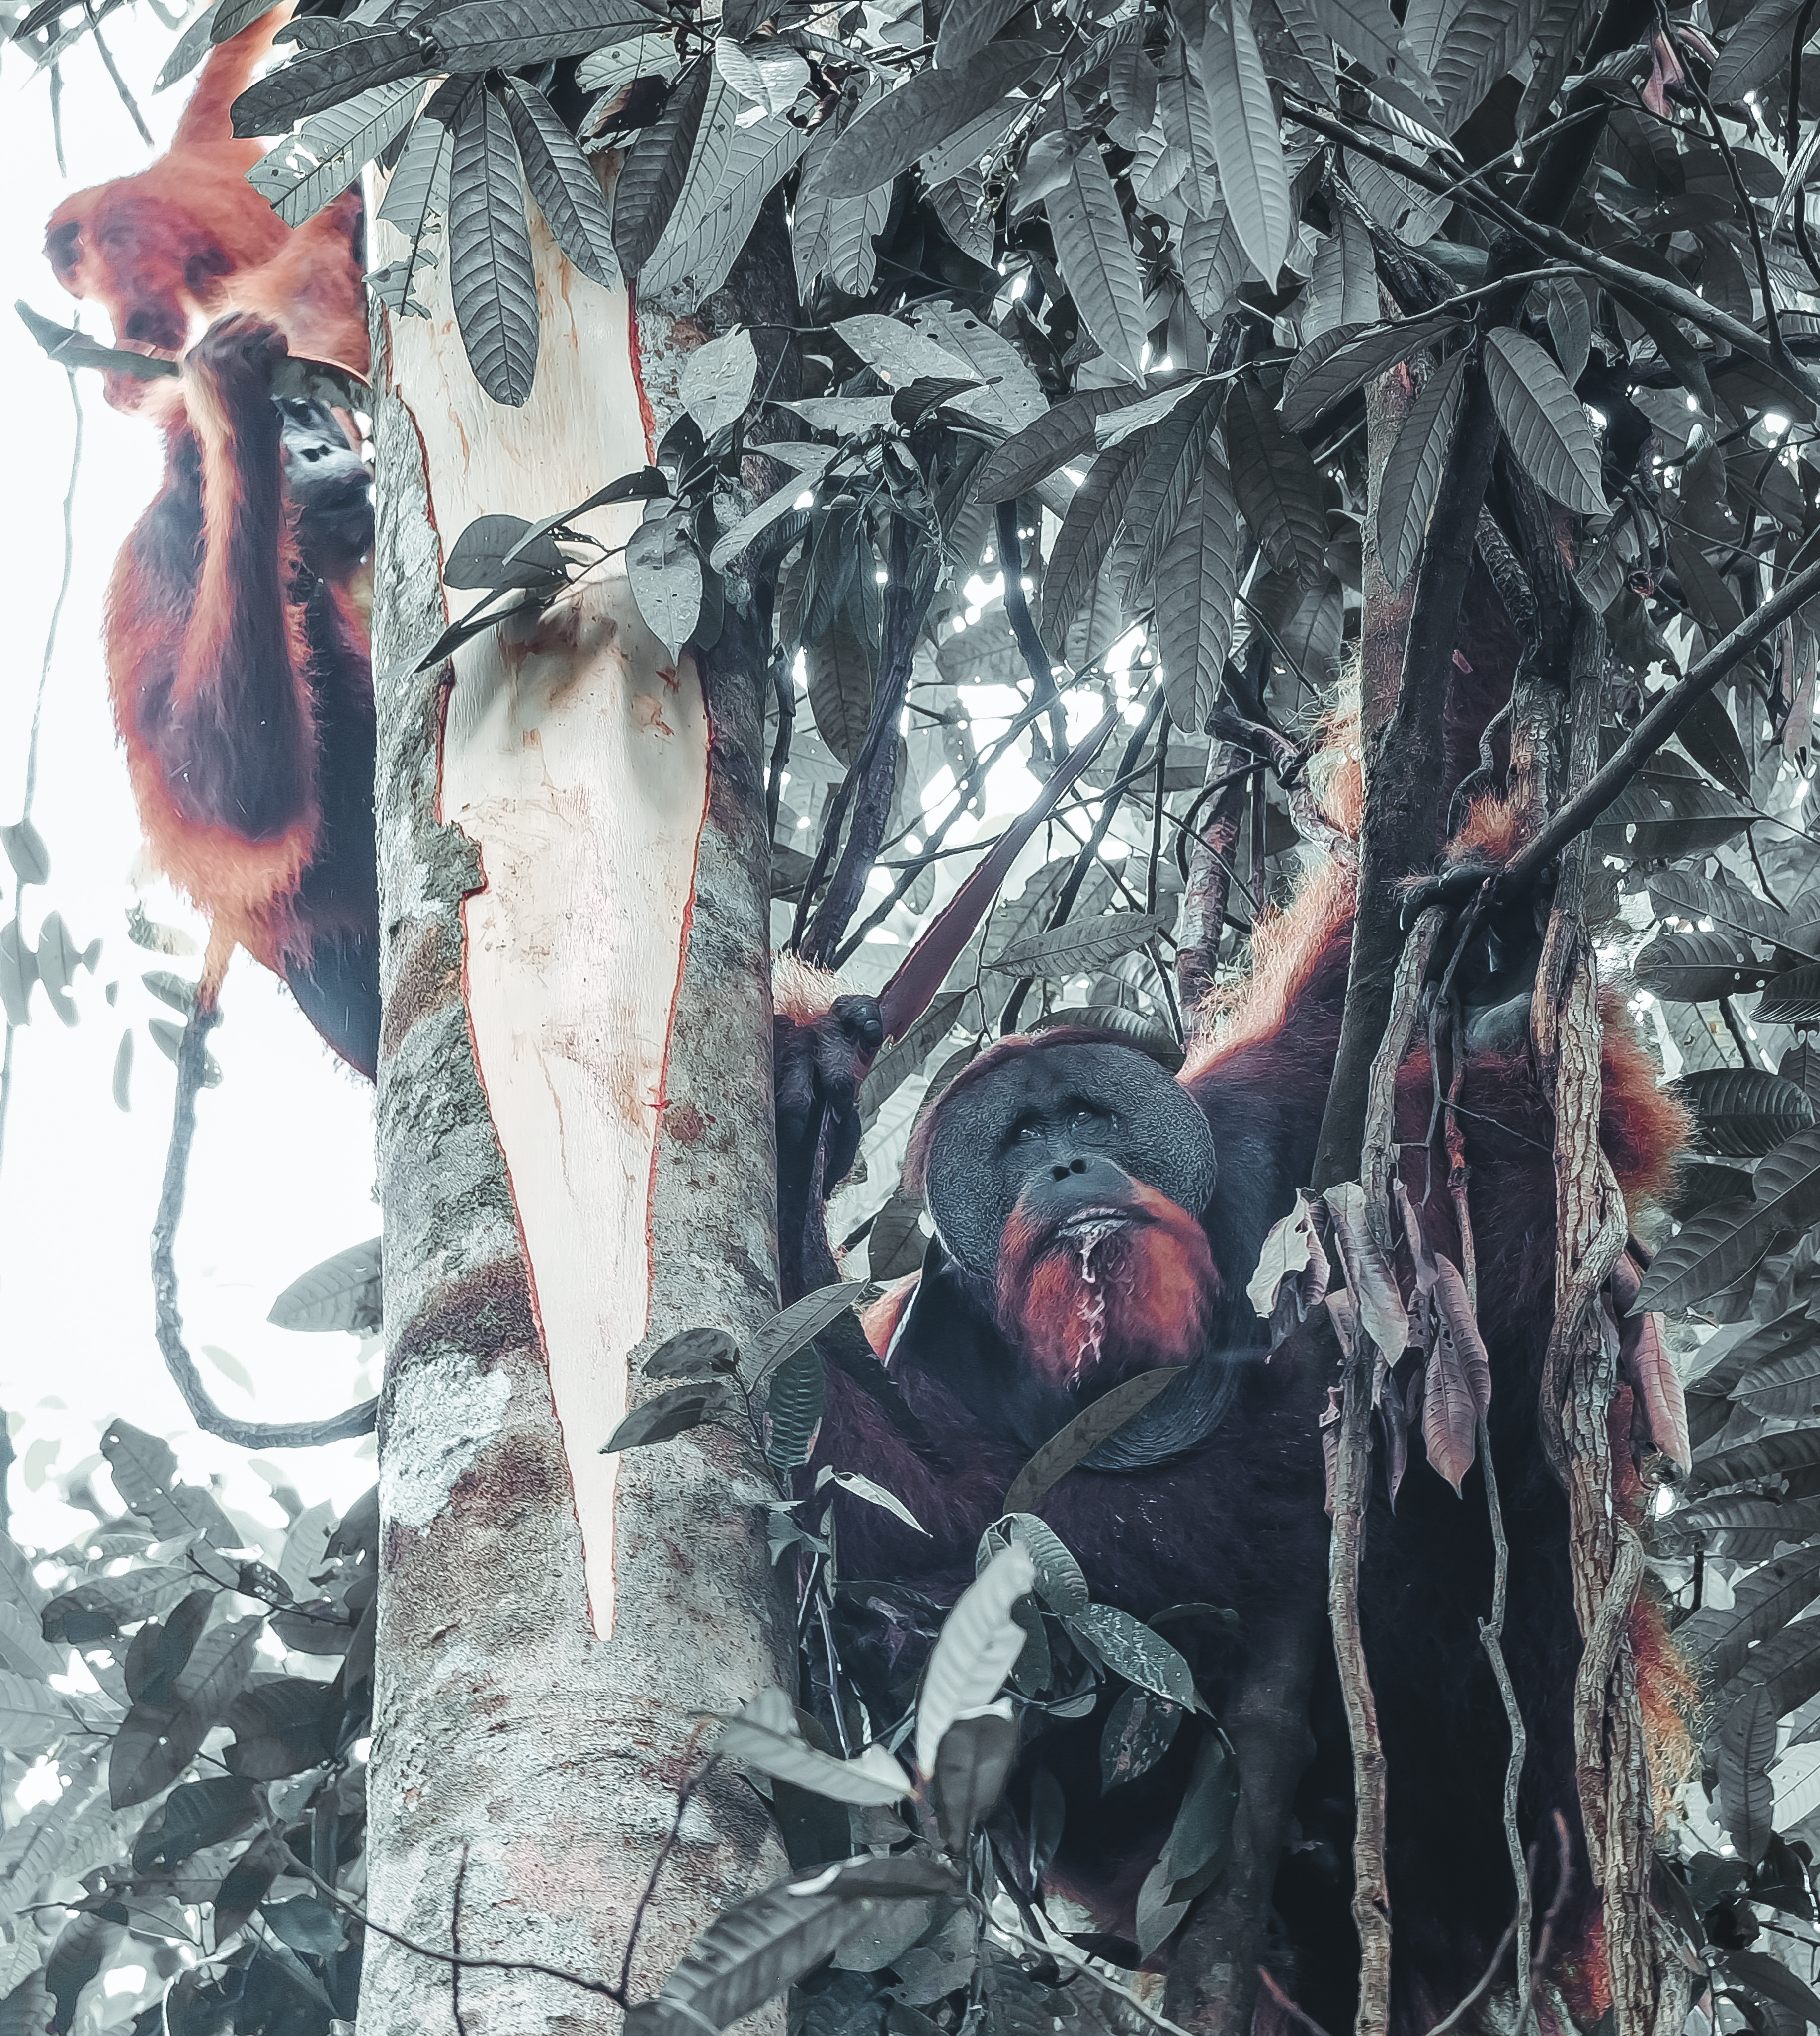 Orangutan Sumatra